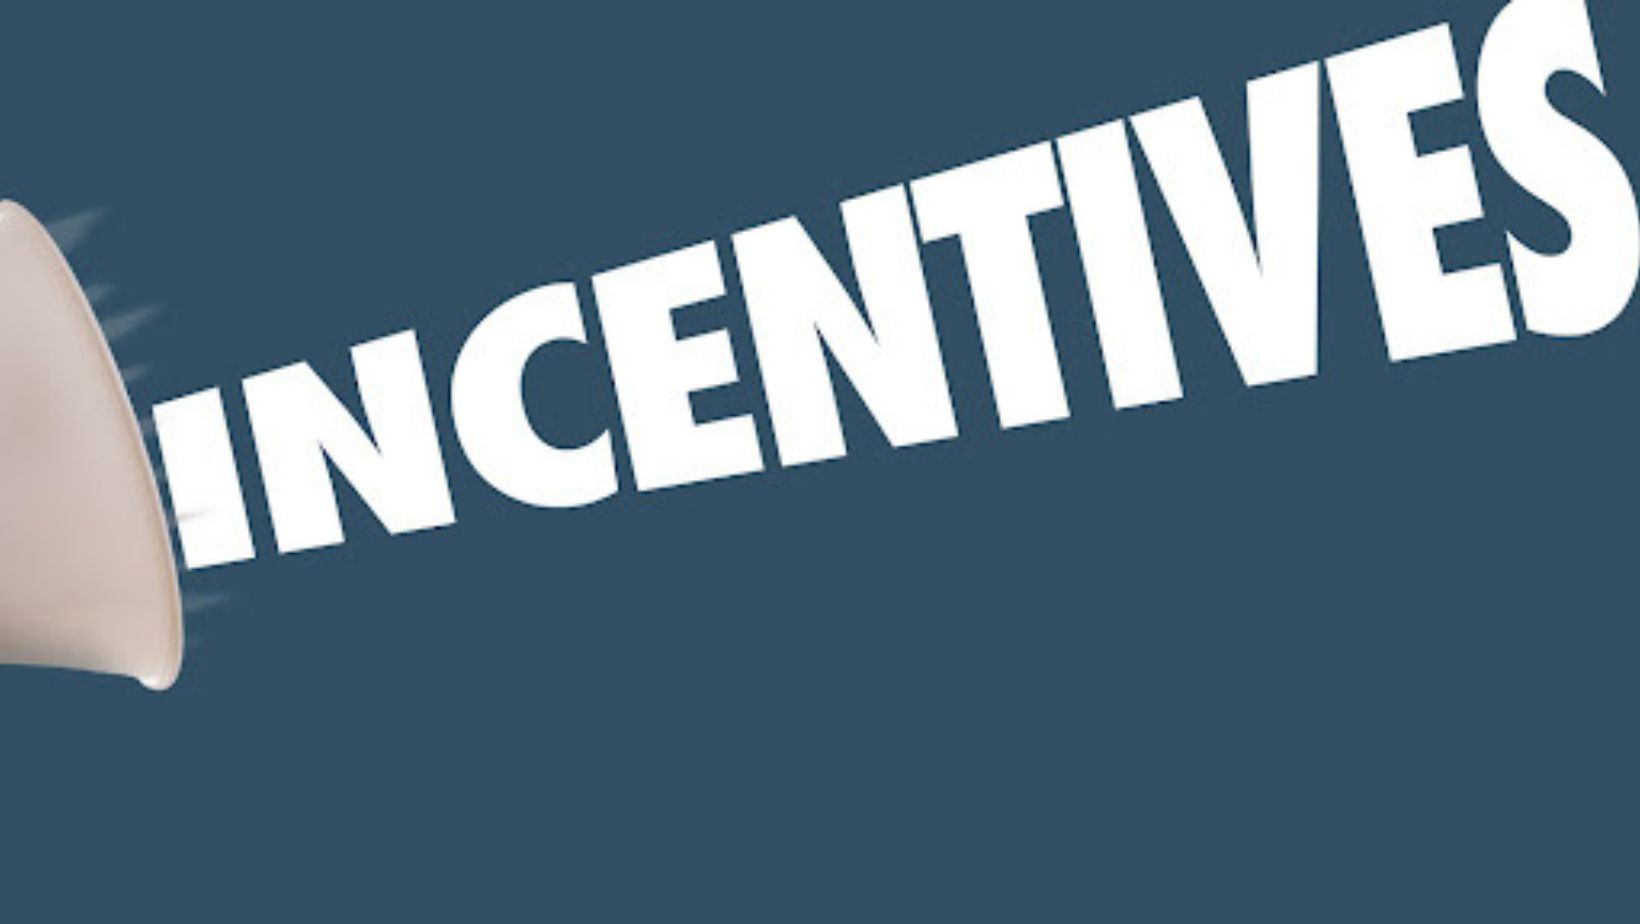 which statement best describes incentives?